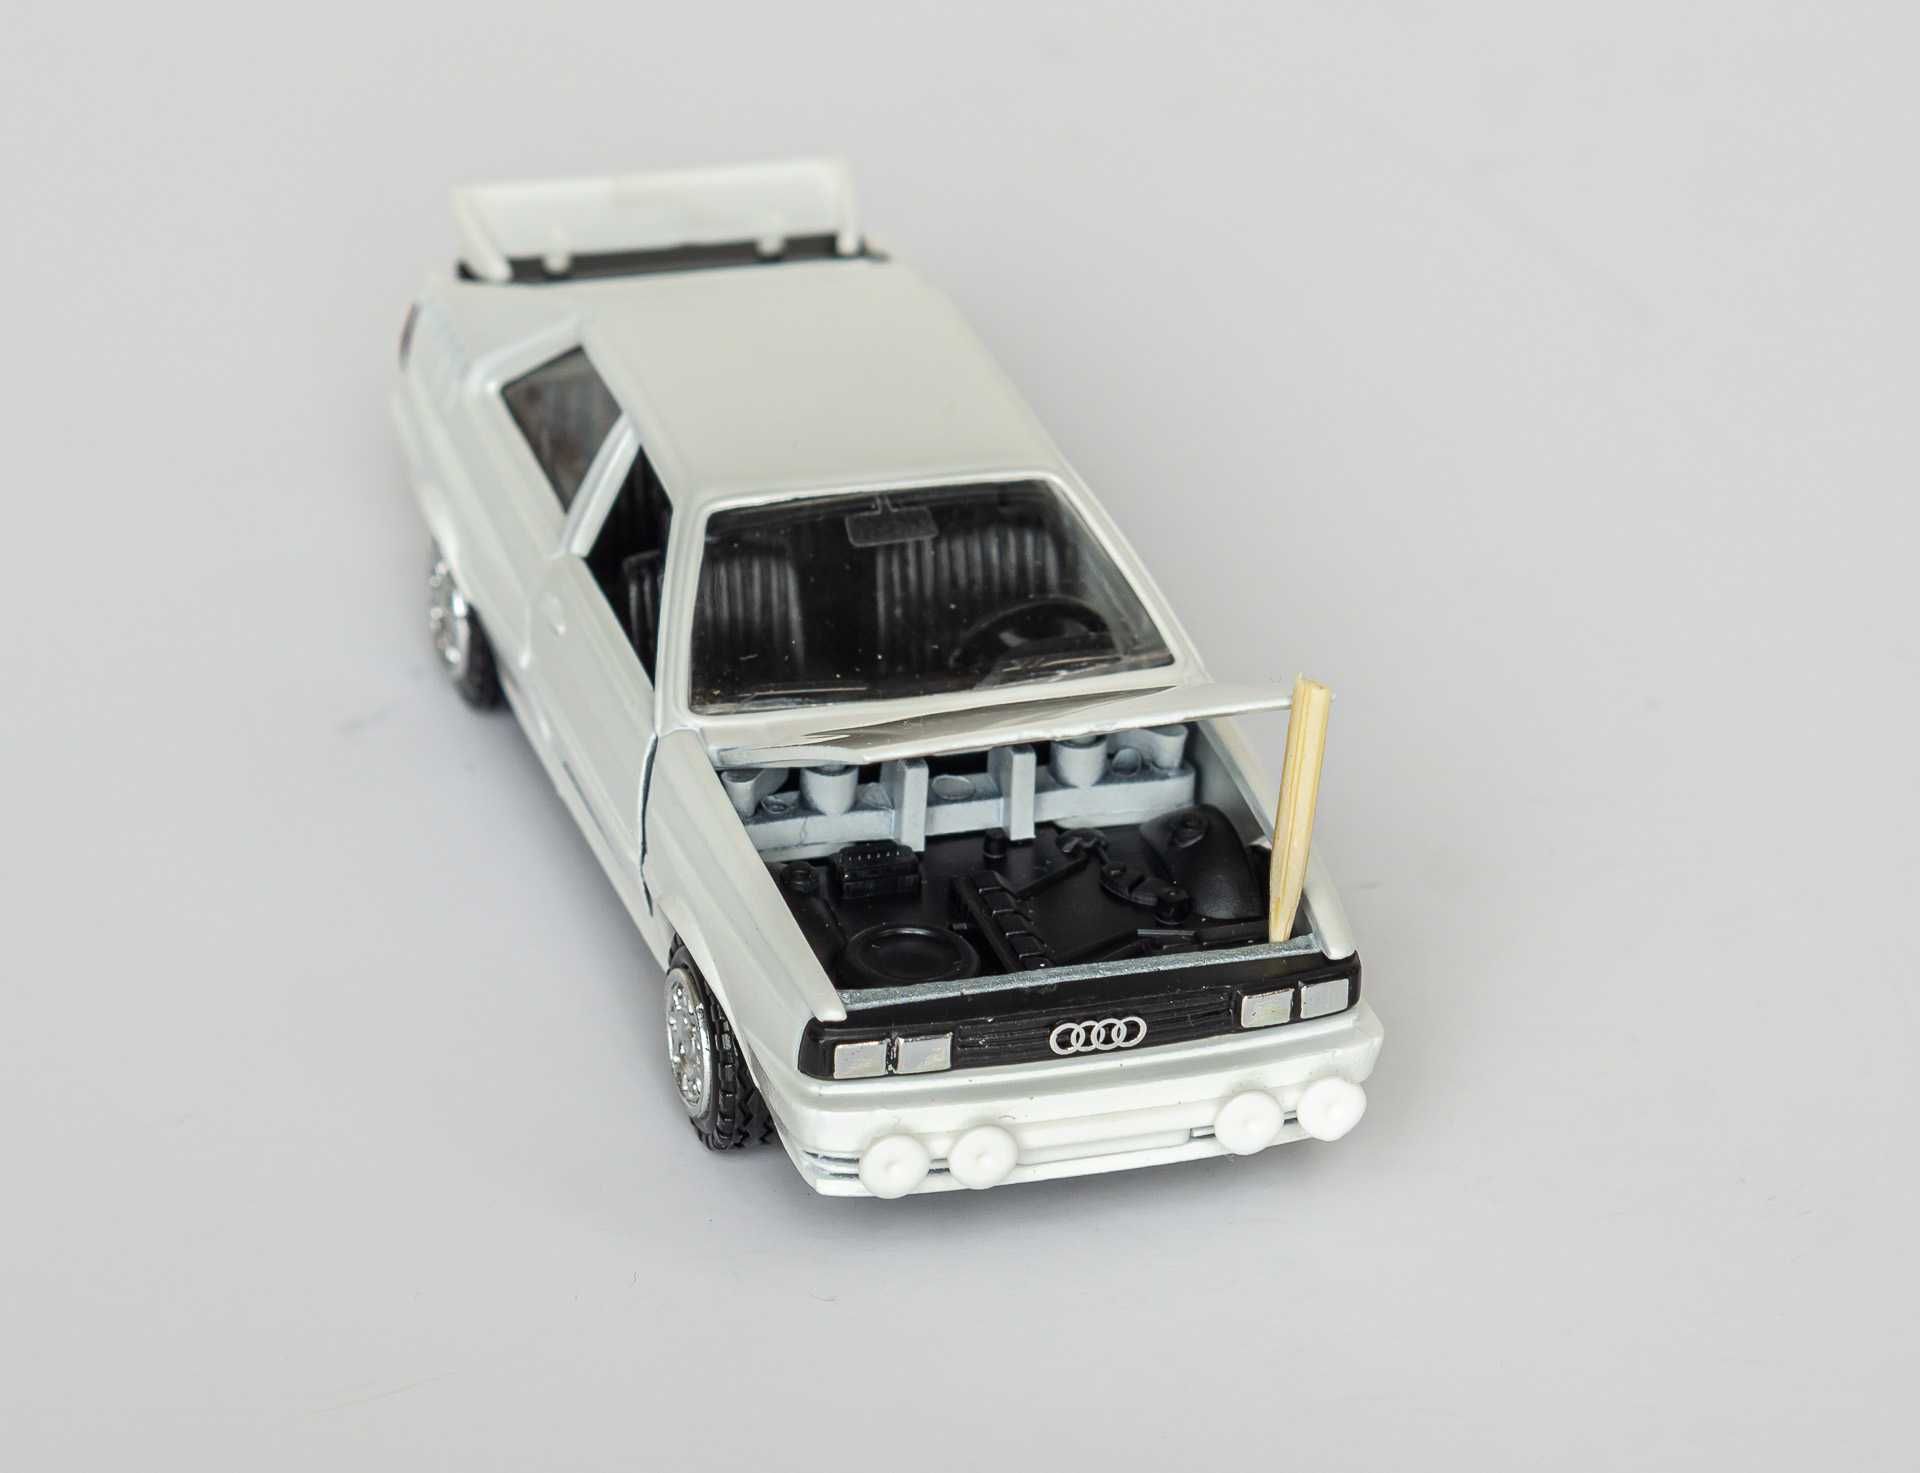 1:43 Audi 80 B2 Quattro 1978-86 coupe white, Conrad #1020 W.Germany